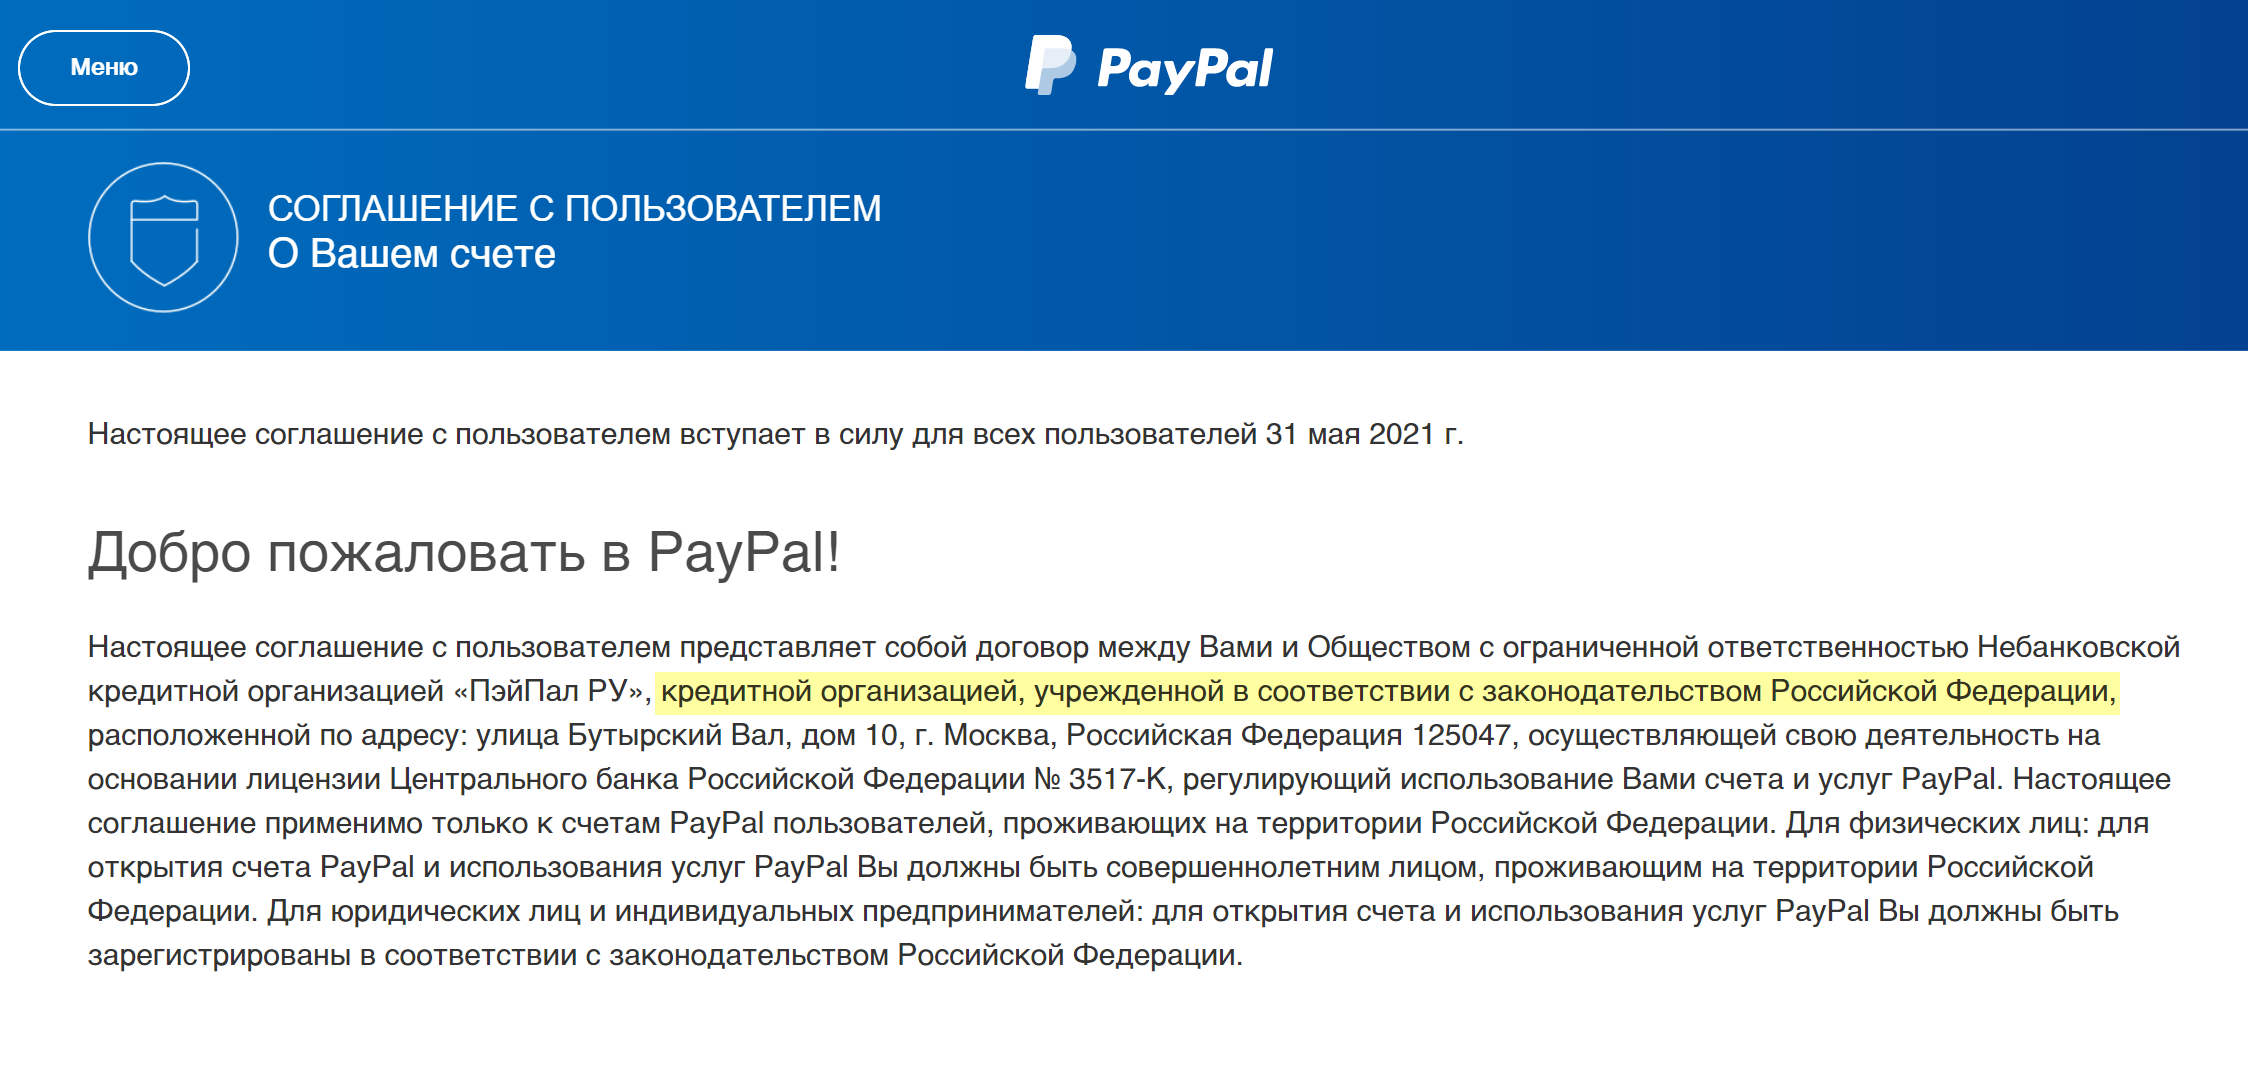 PayPal в России работает через небанковскую кредитную организацию «Пэйпал-ру»